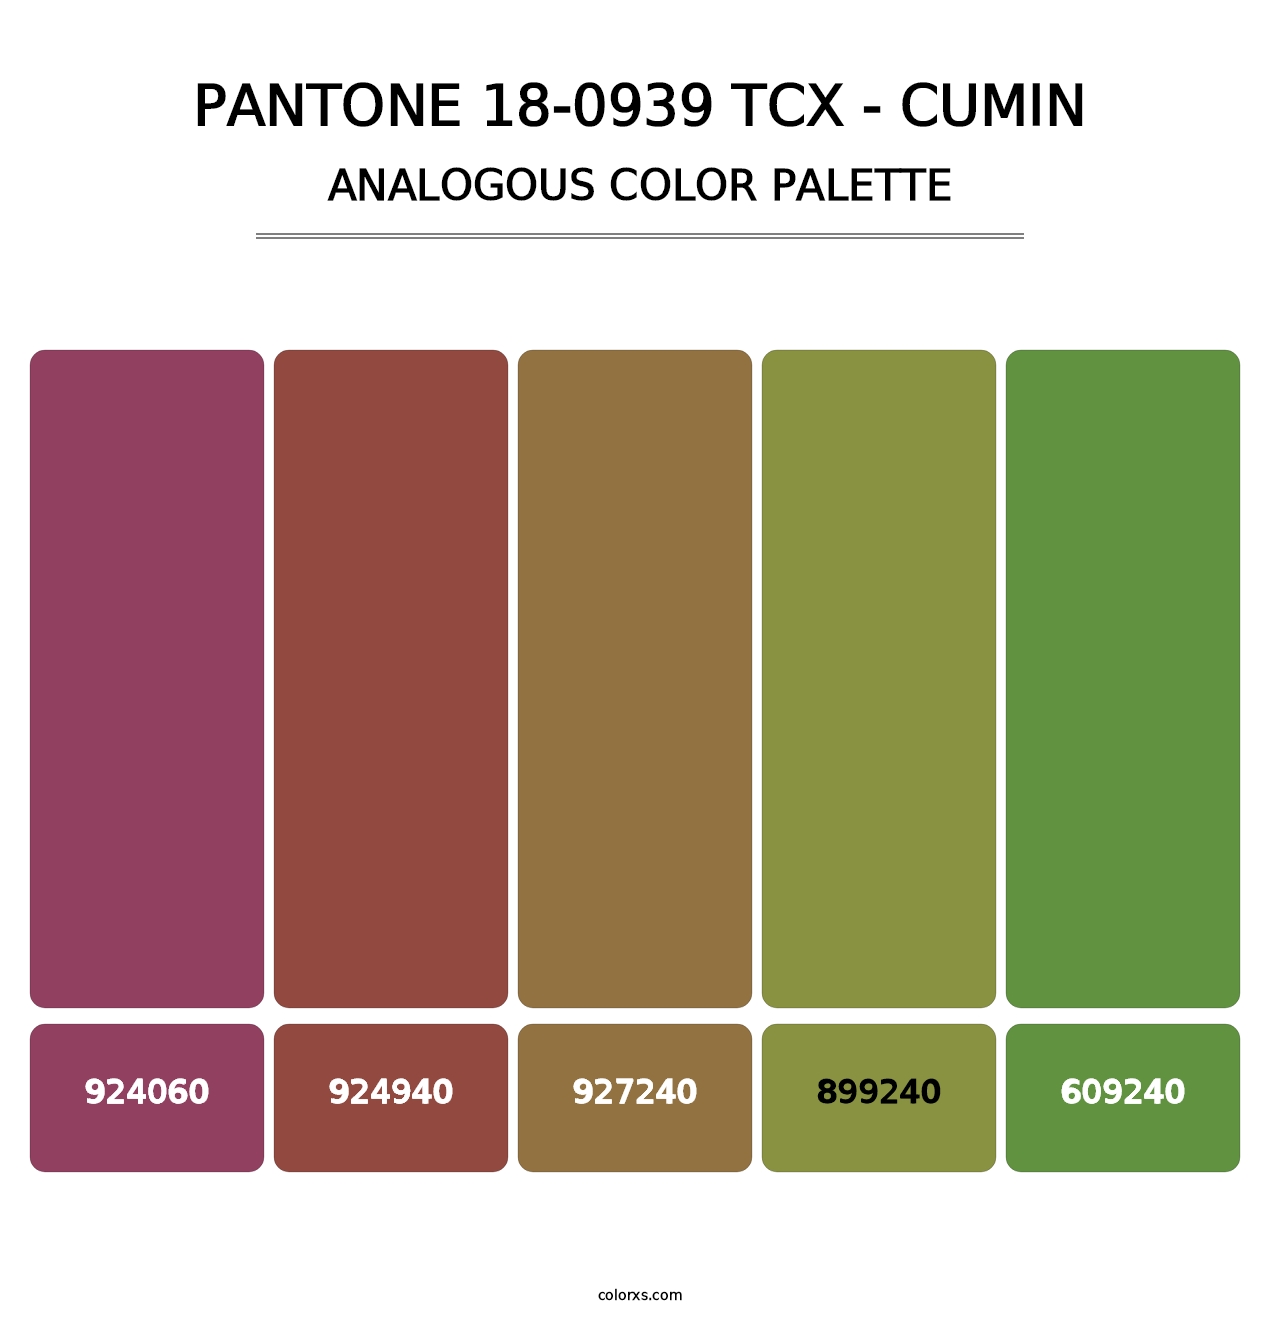 PANTONE 18-0939 TCX - Cumin - Analogous Color Palette